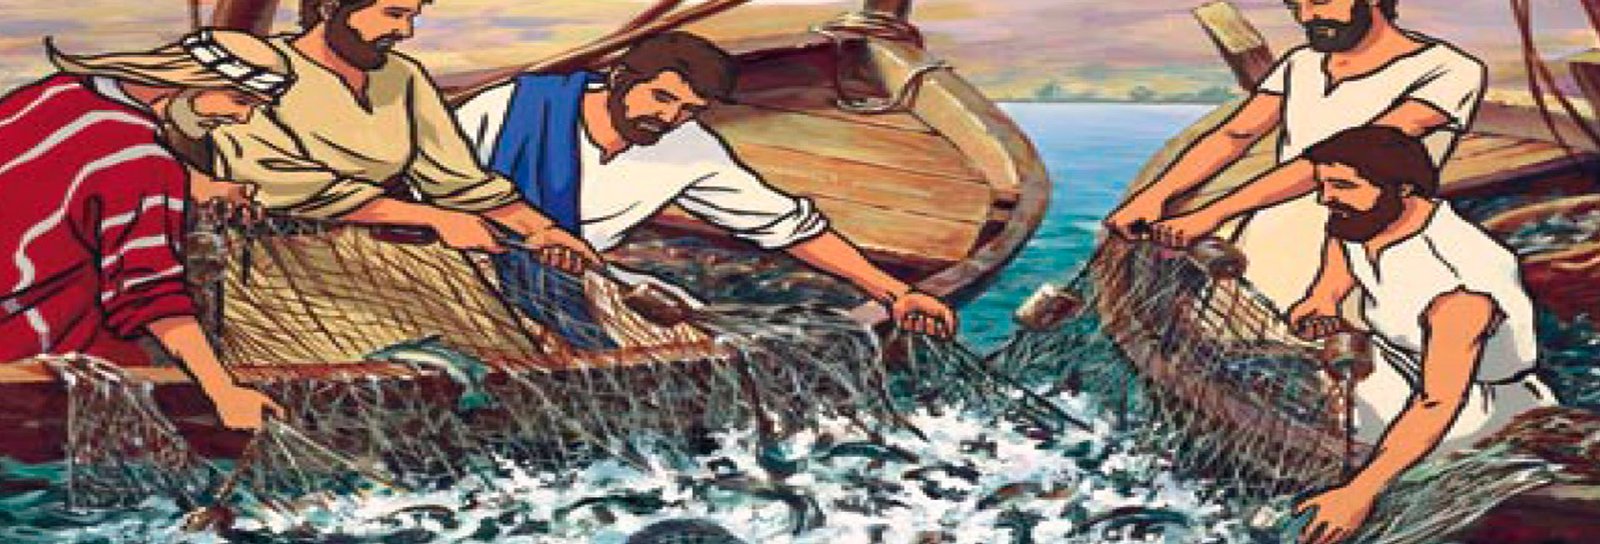 Lição 3 - Pescando com Jesus - SLIDES E VIDEOAULAS